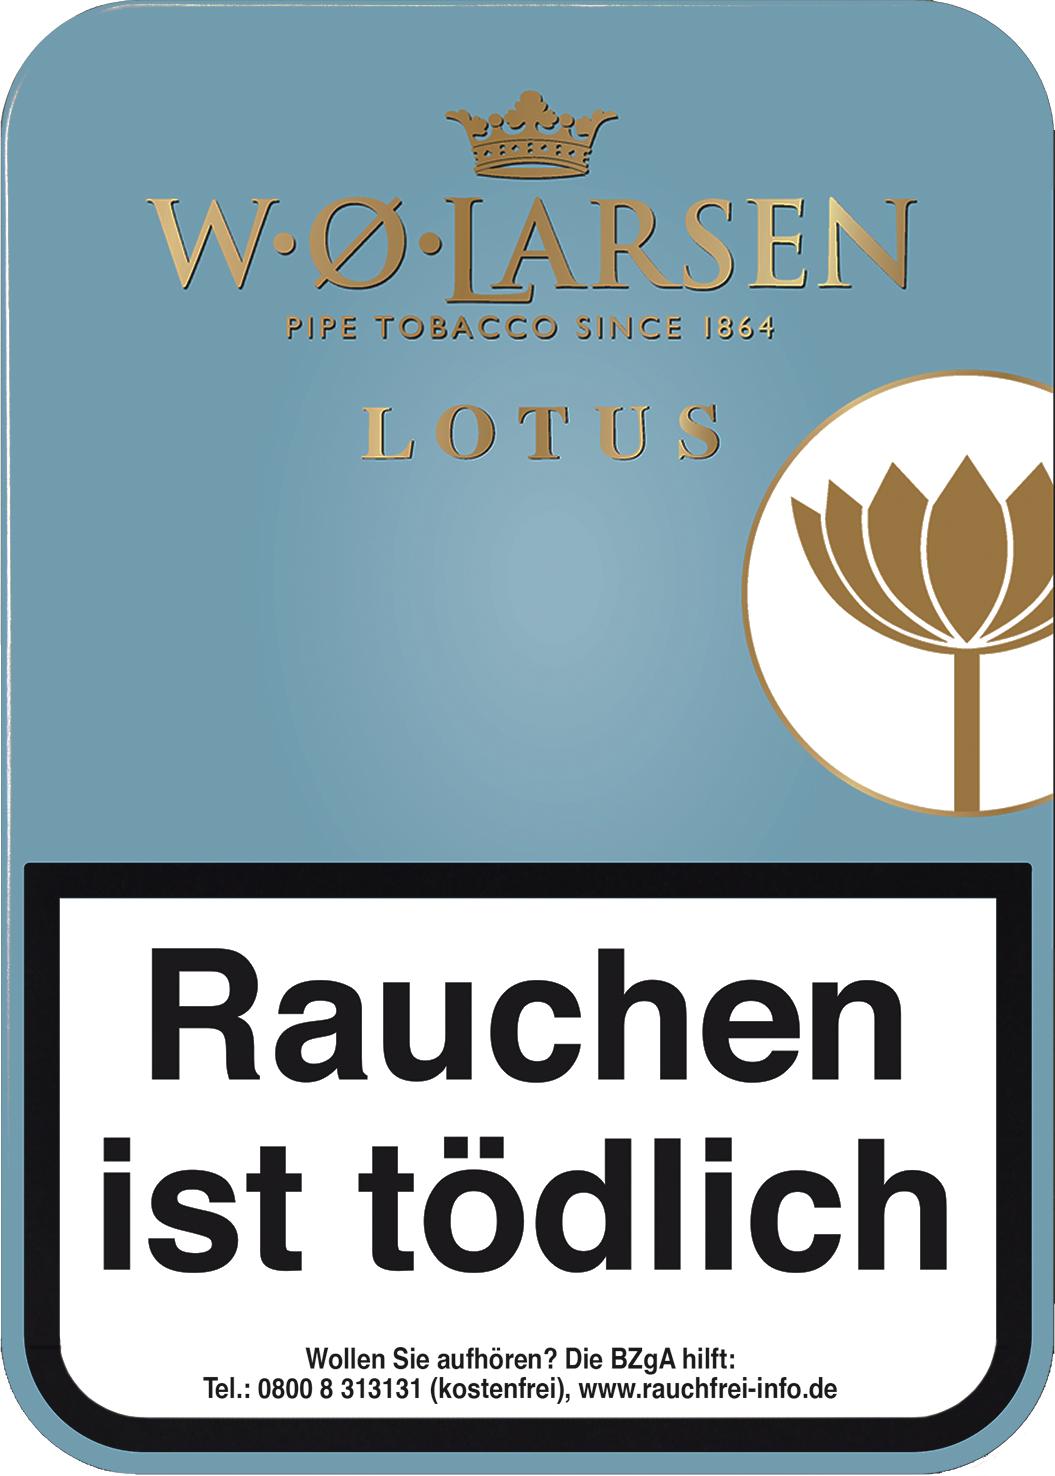 W.O. Larsen Lotus Pfeifentabak 1 x 100g Krüll